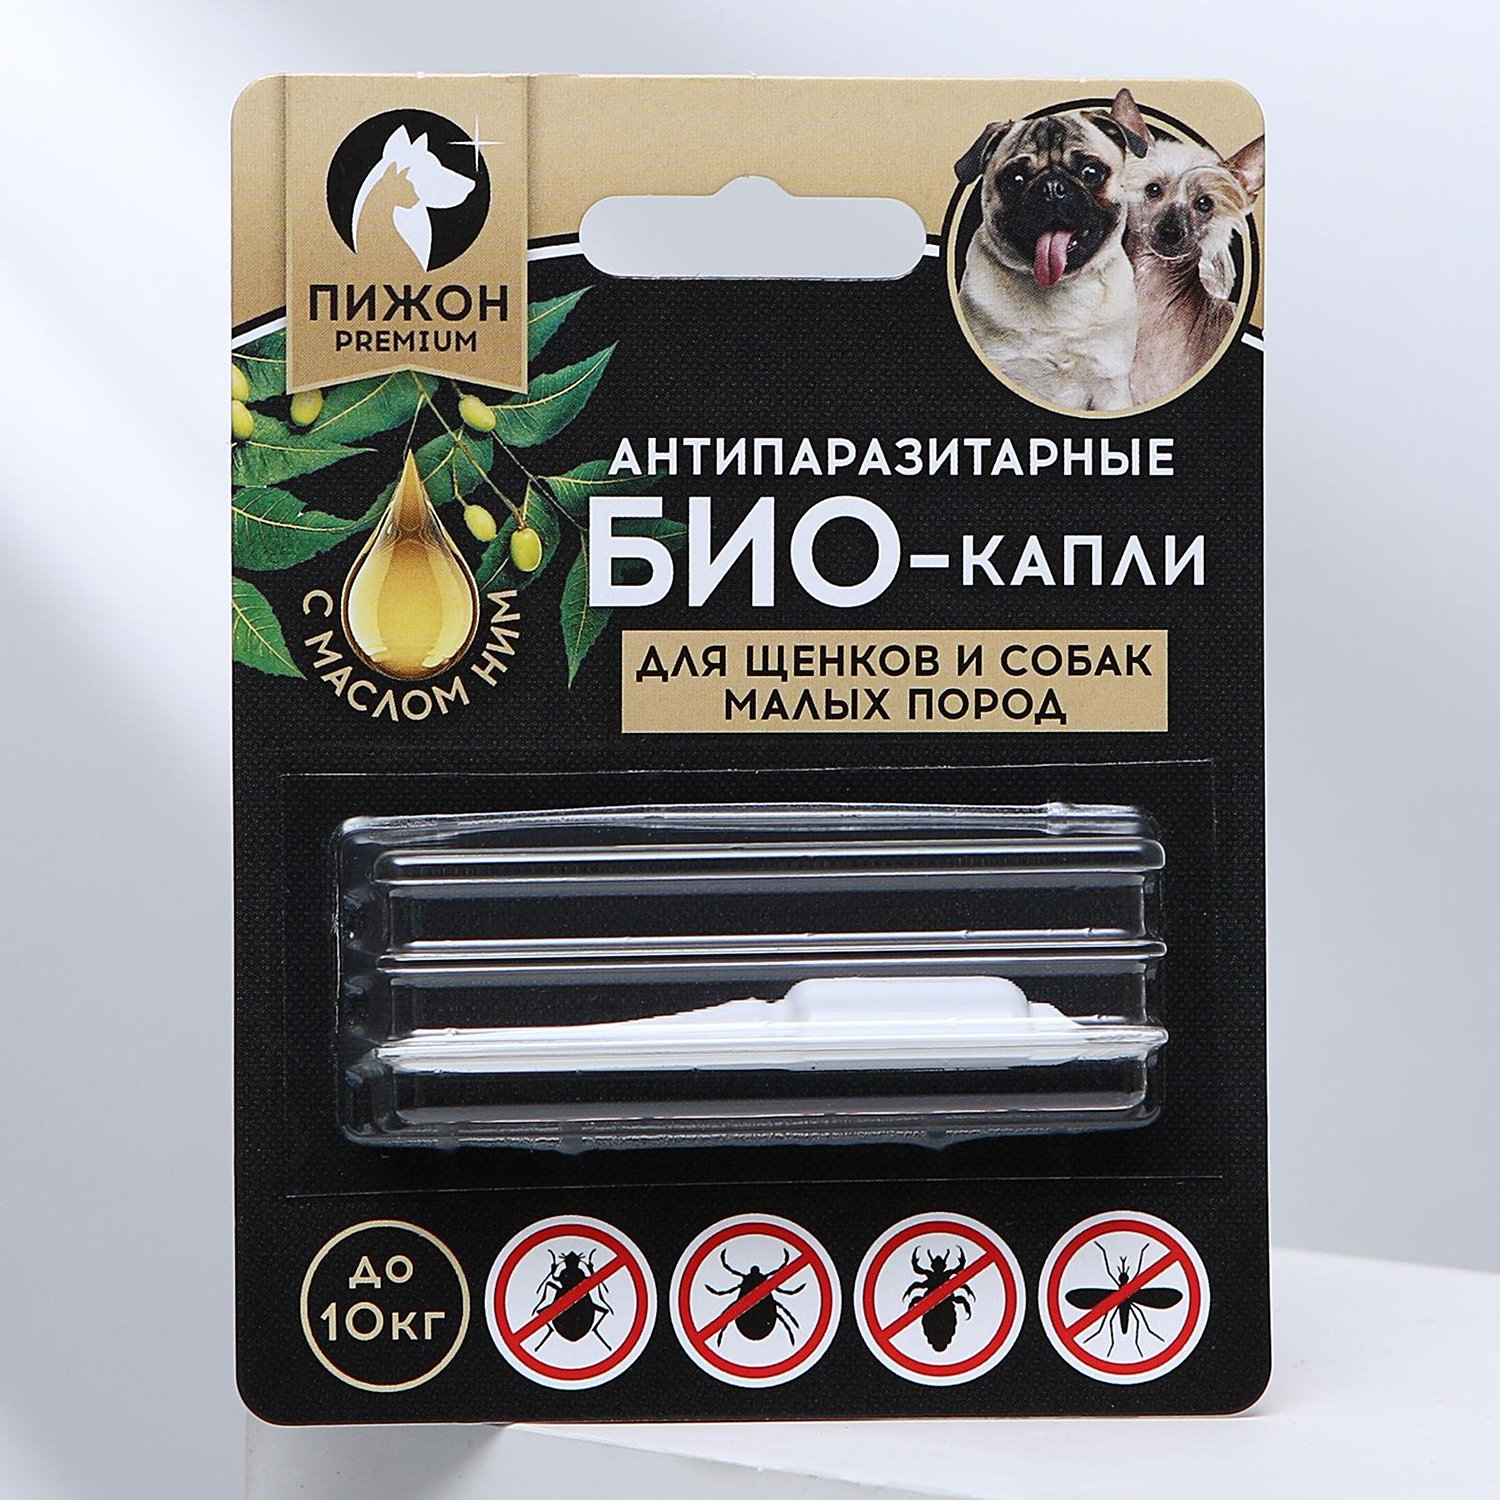 Антипаразитарные БИОкапли для щенков и собак малых пород, до 10кг, 1мл Пижон Premium 5215239